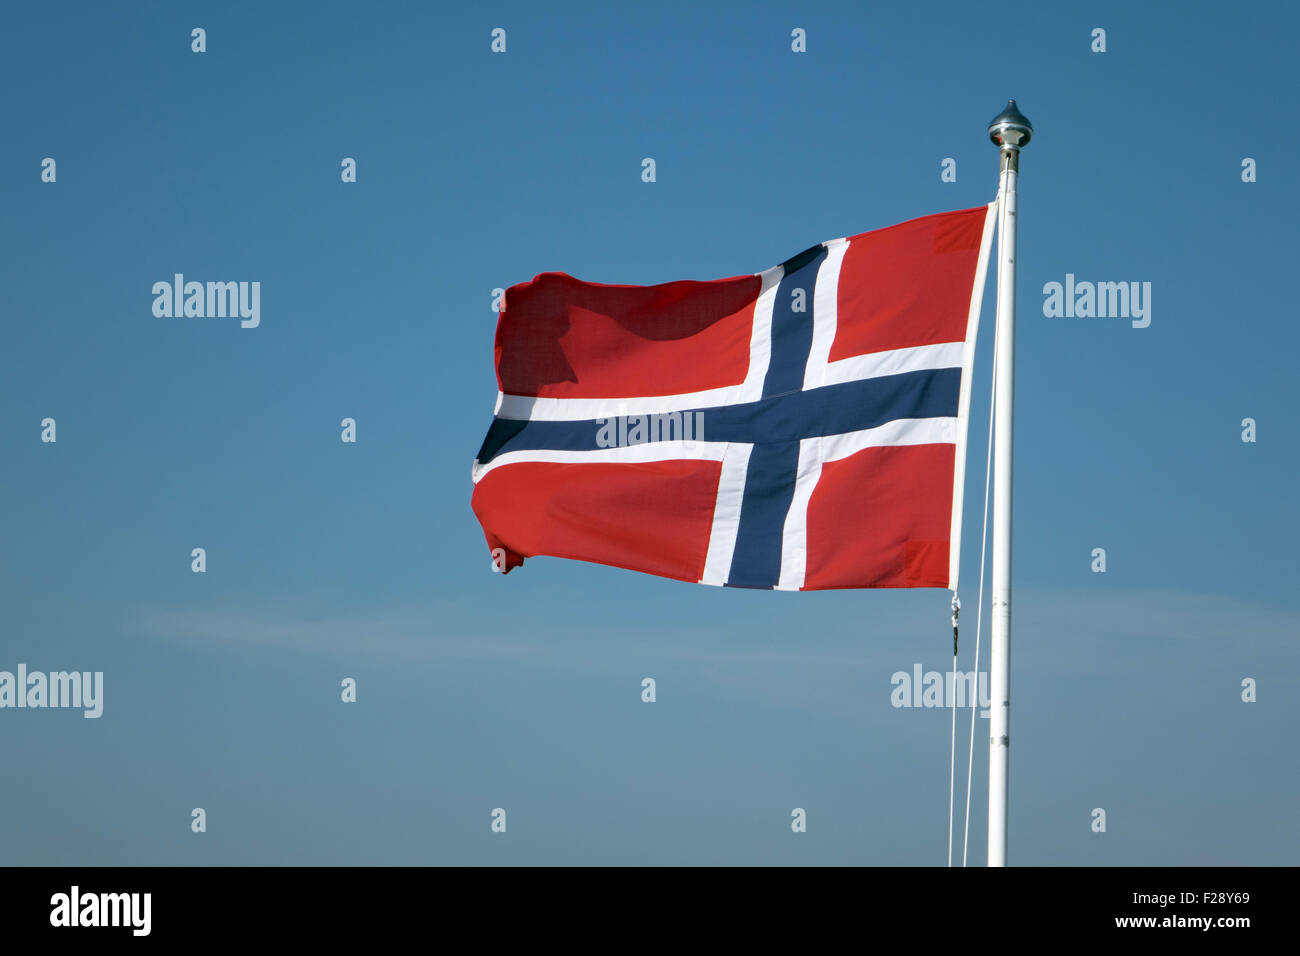 Norwegian flag fluttering against a blue sky Stock Photo